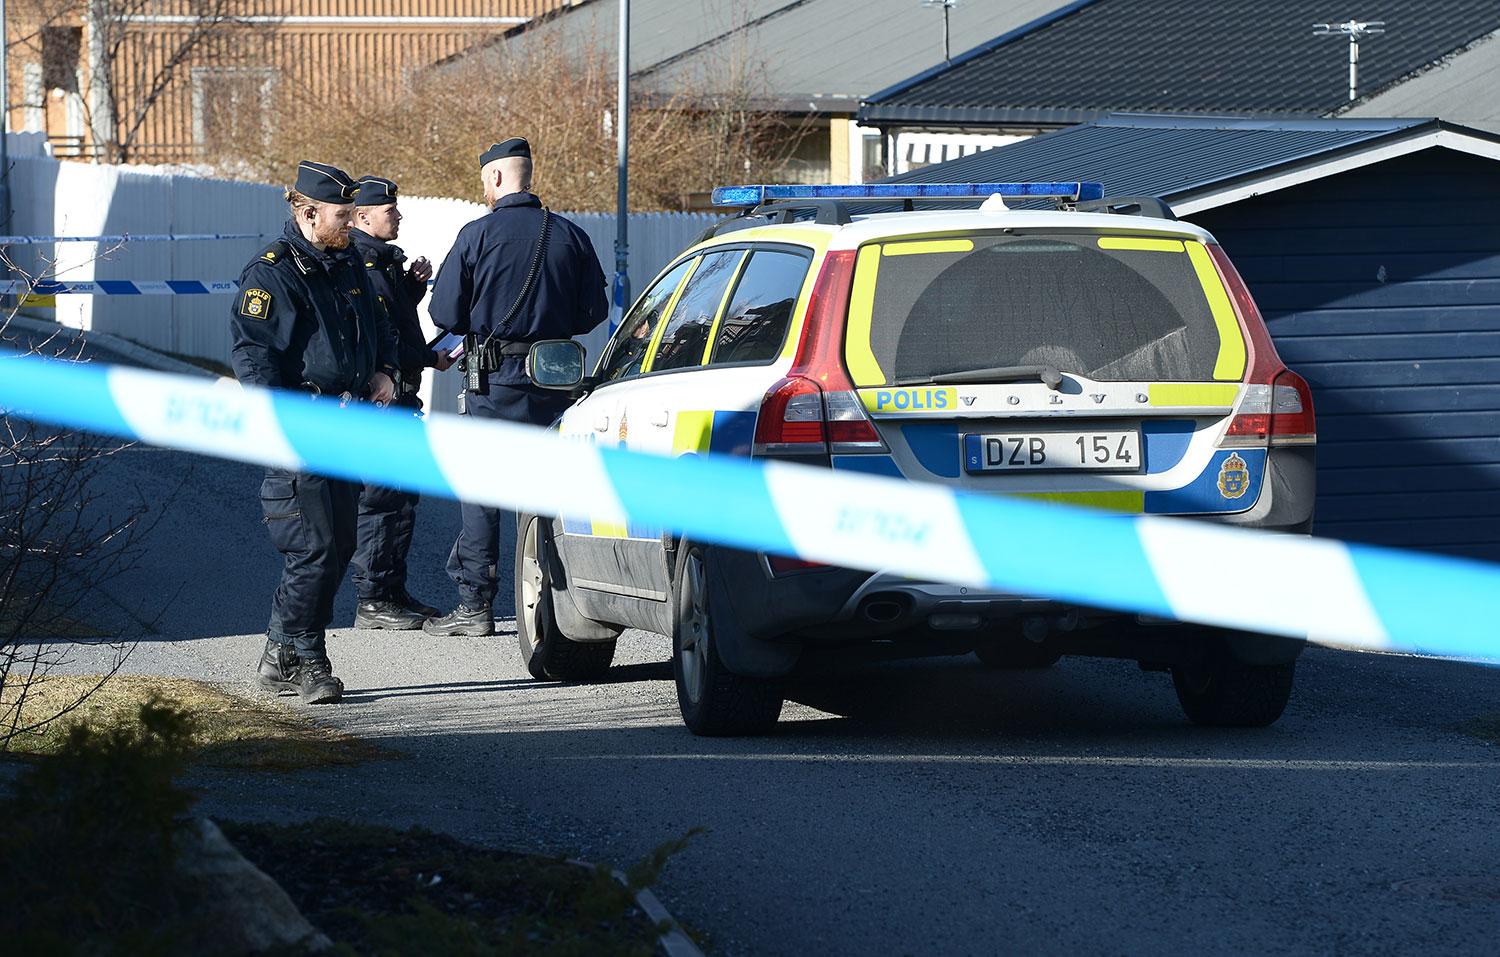 HÖGGS IHJÄL MITT I RADHUSIDYLL Polis och ambulans larmades till Upplands-Väsby norr om Stockholm, när de kom fram hittades en kvinna svårt knivhuggen. Hon dog när ambulanspersonal försökte rädda hennes liv.